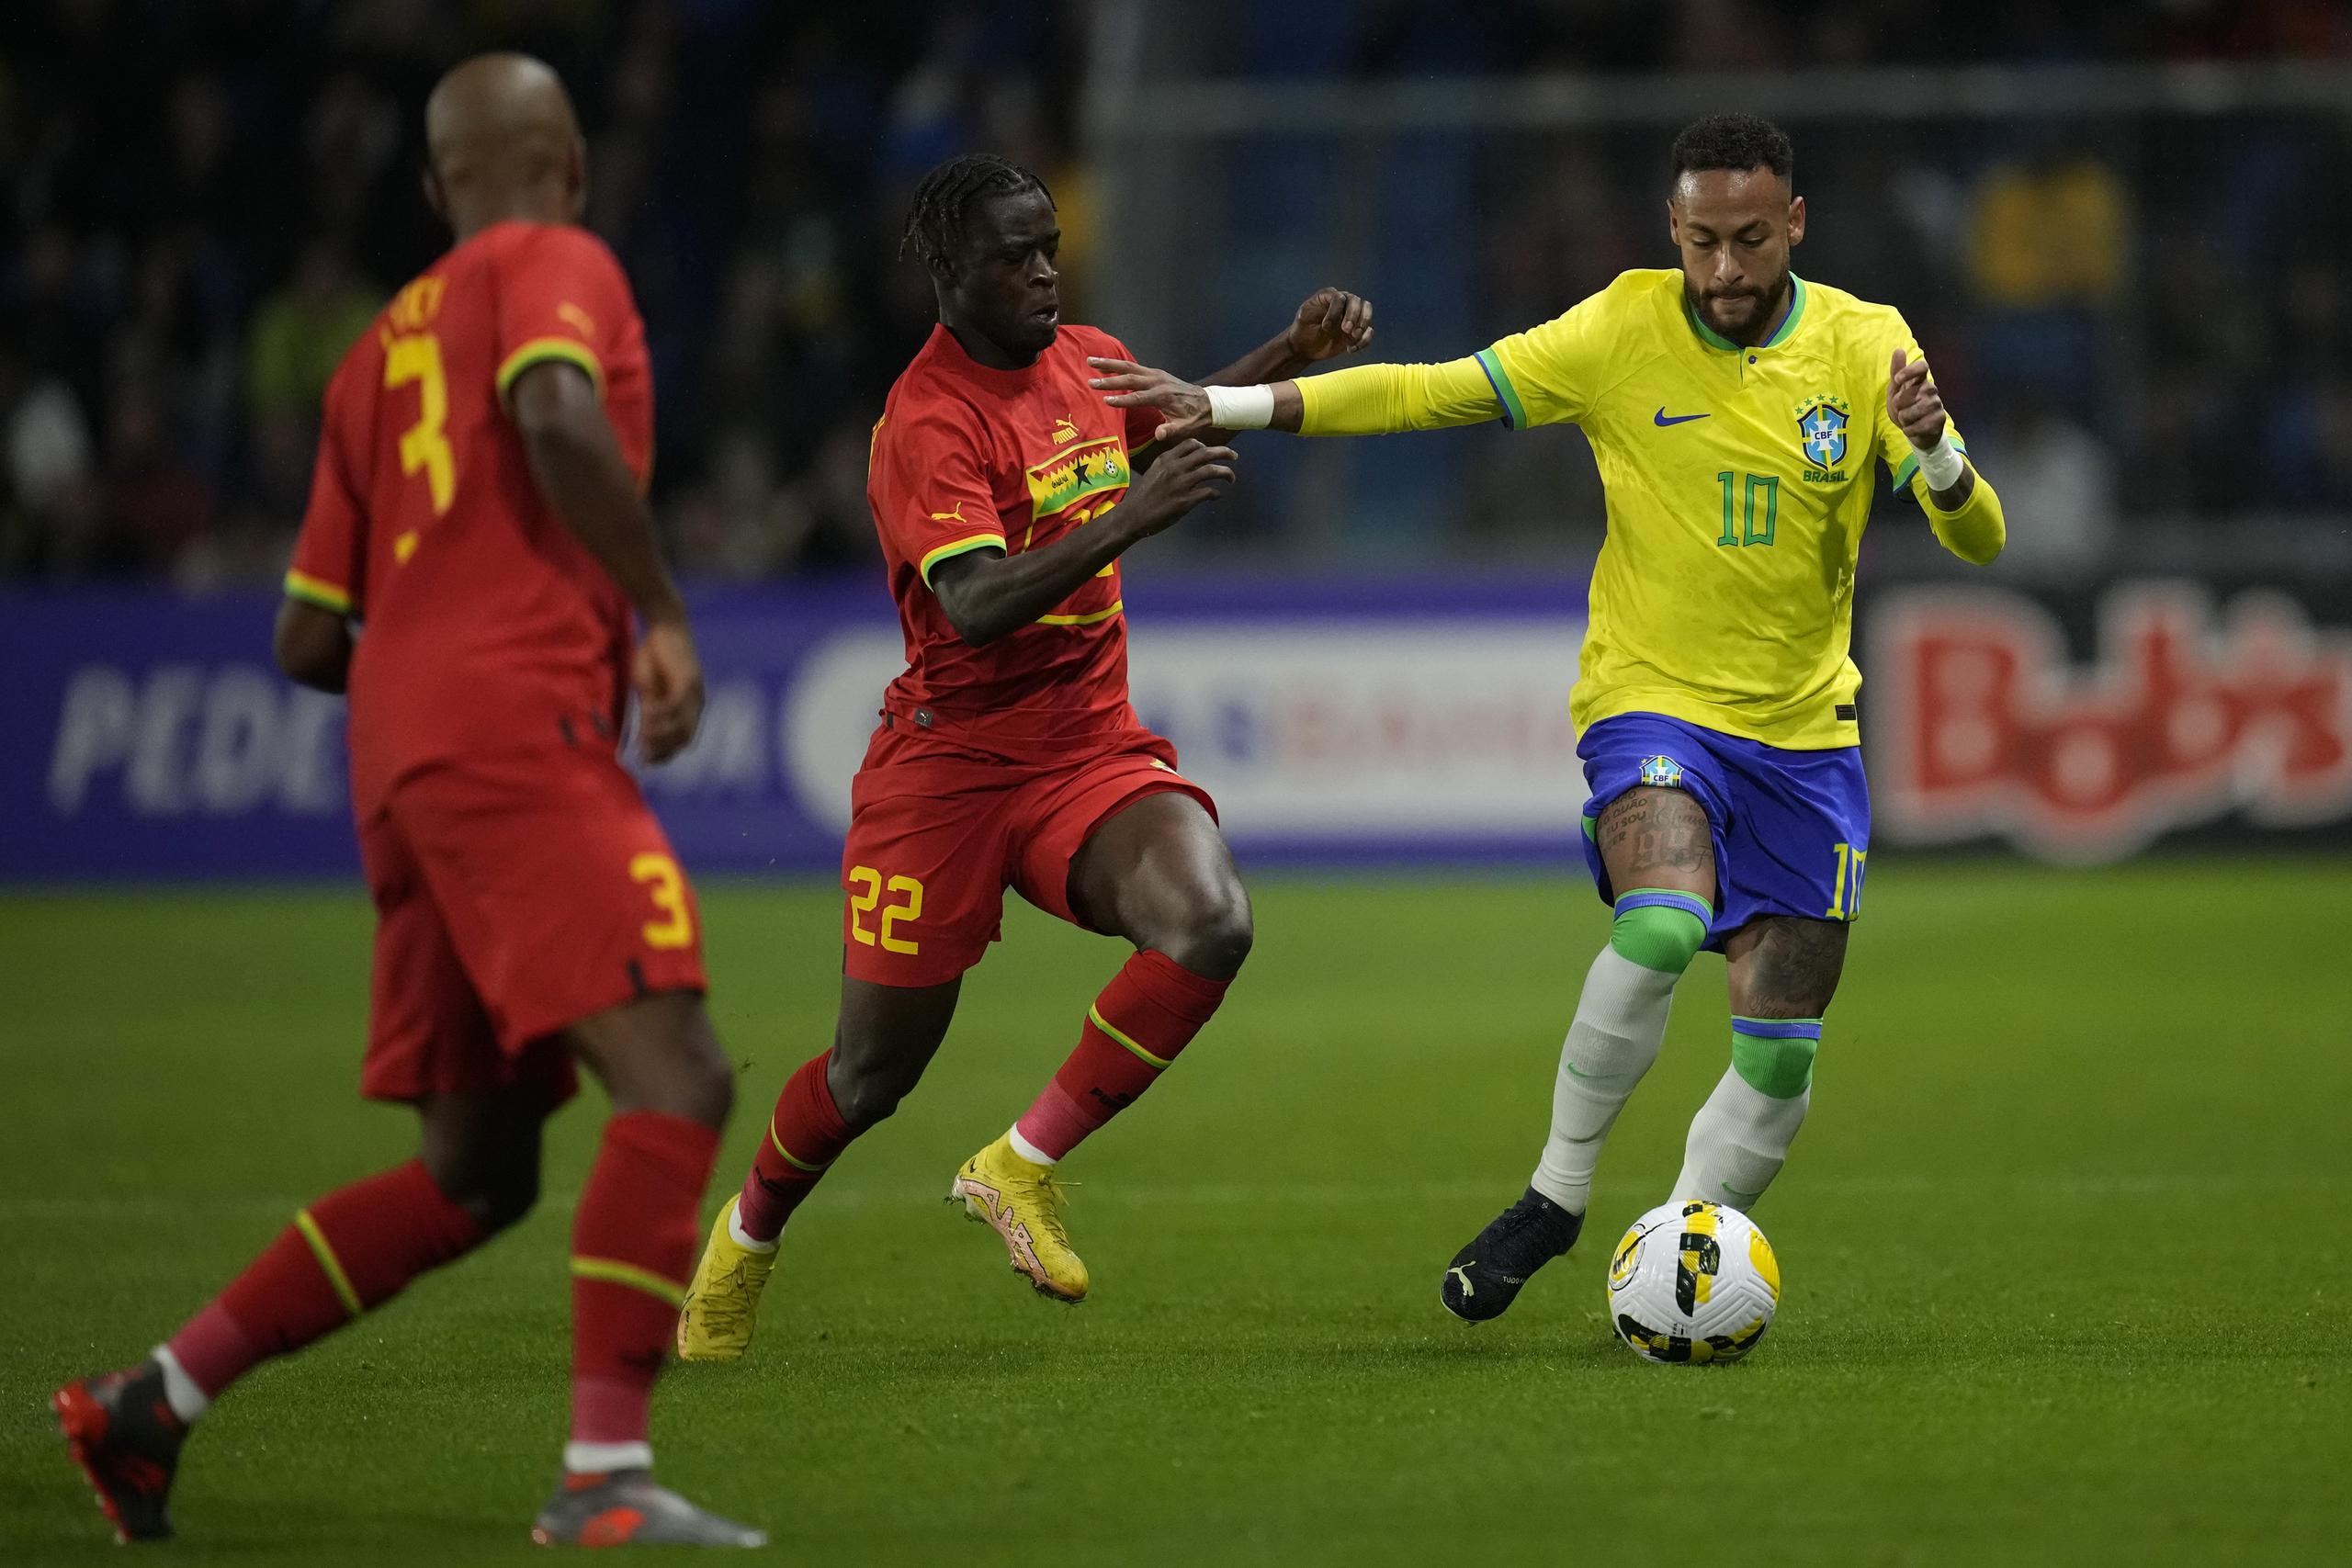 El delantero brasileño Neymar (derecha) pugna el balón con el ghanés Kamaldeen Sulemana durante un partido amistoso en Le Havre, Francia, el 23 de septiembre de 2022. Neymar intentará guiar a Brasil a su sexta corona mundial. El país es el único que ha ganado el torneo en cinco ocasiones.